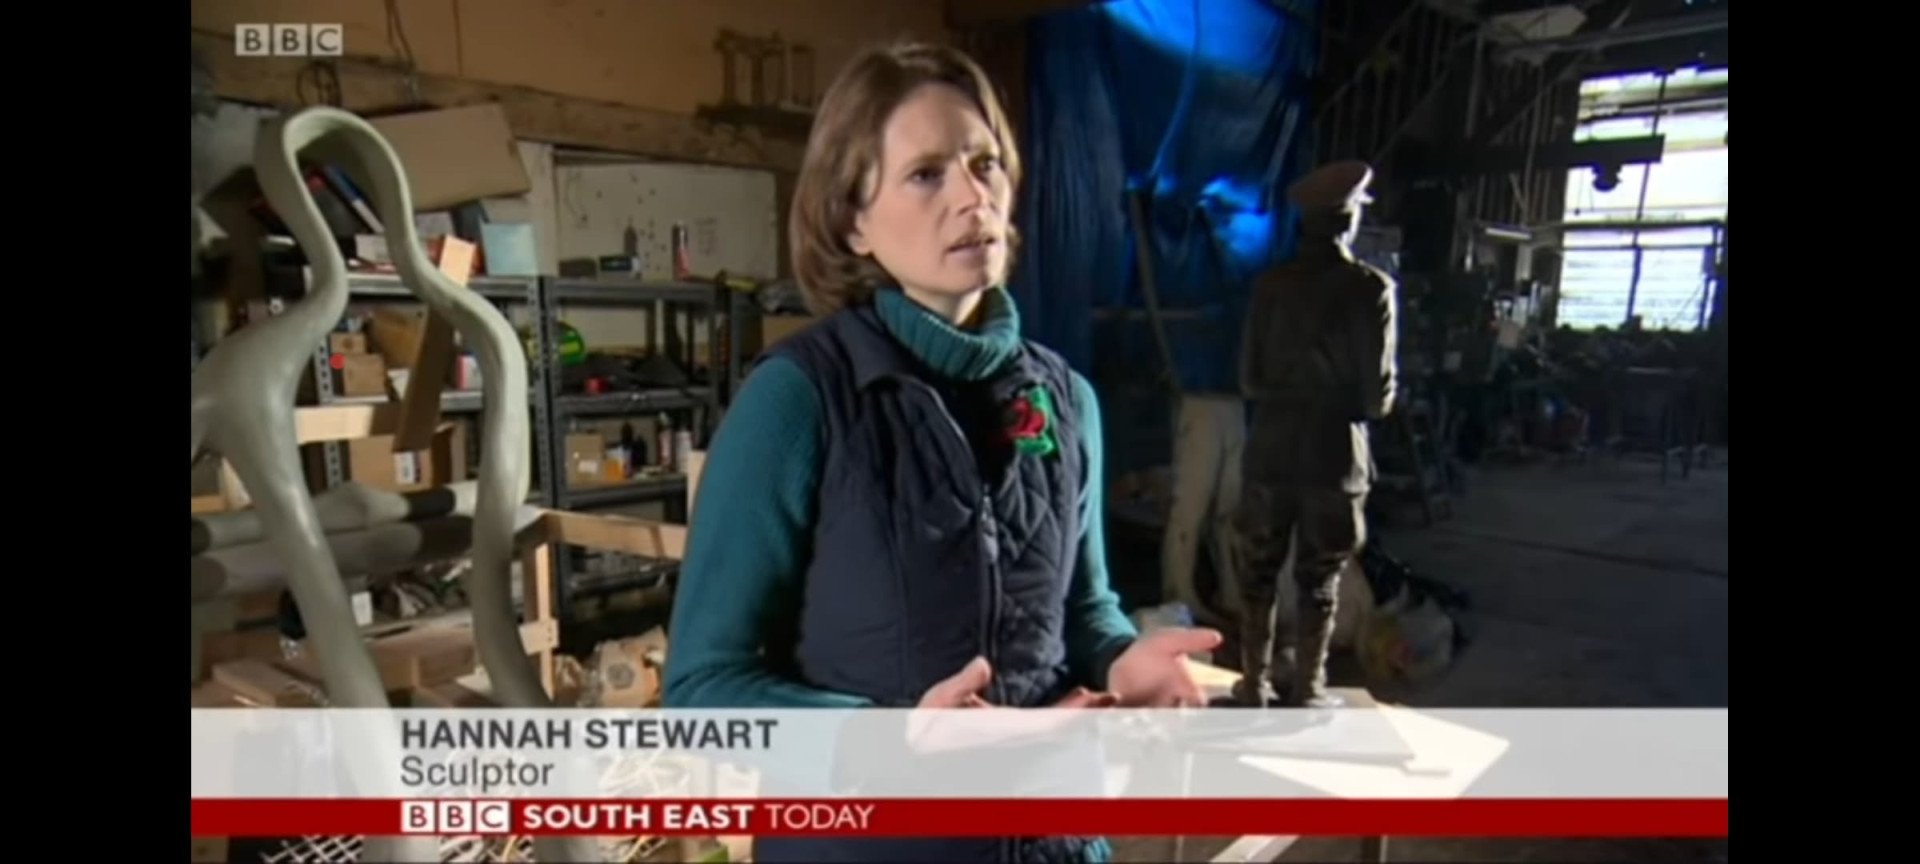 Hannah Stewart being interviewed on BBC